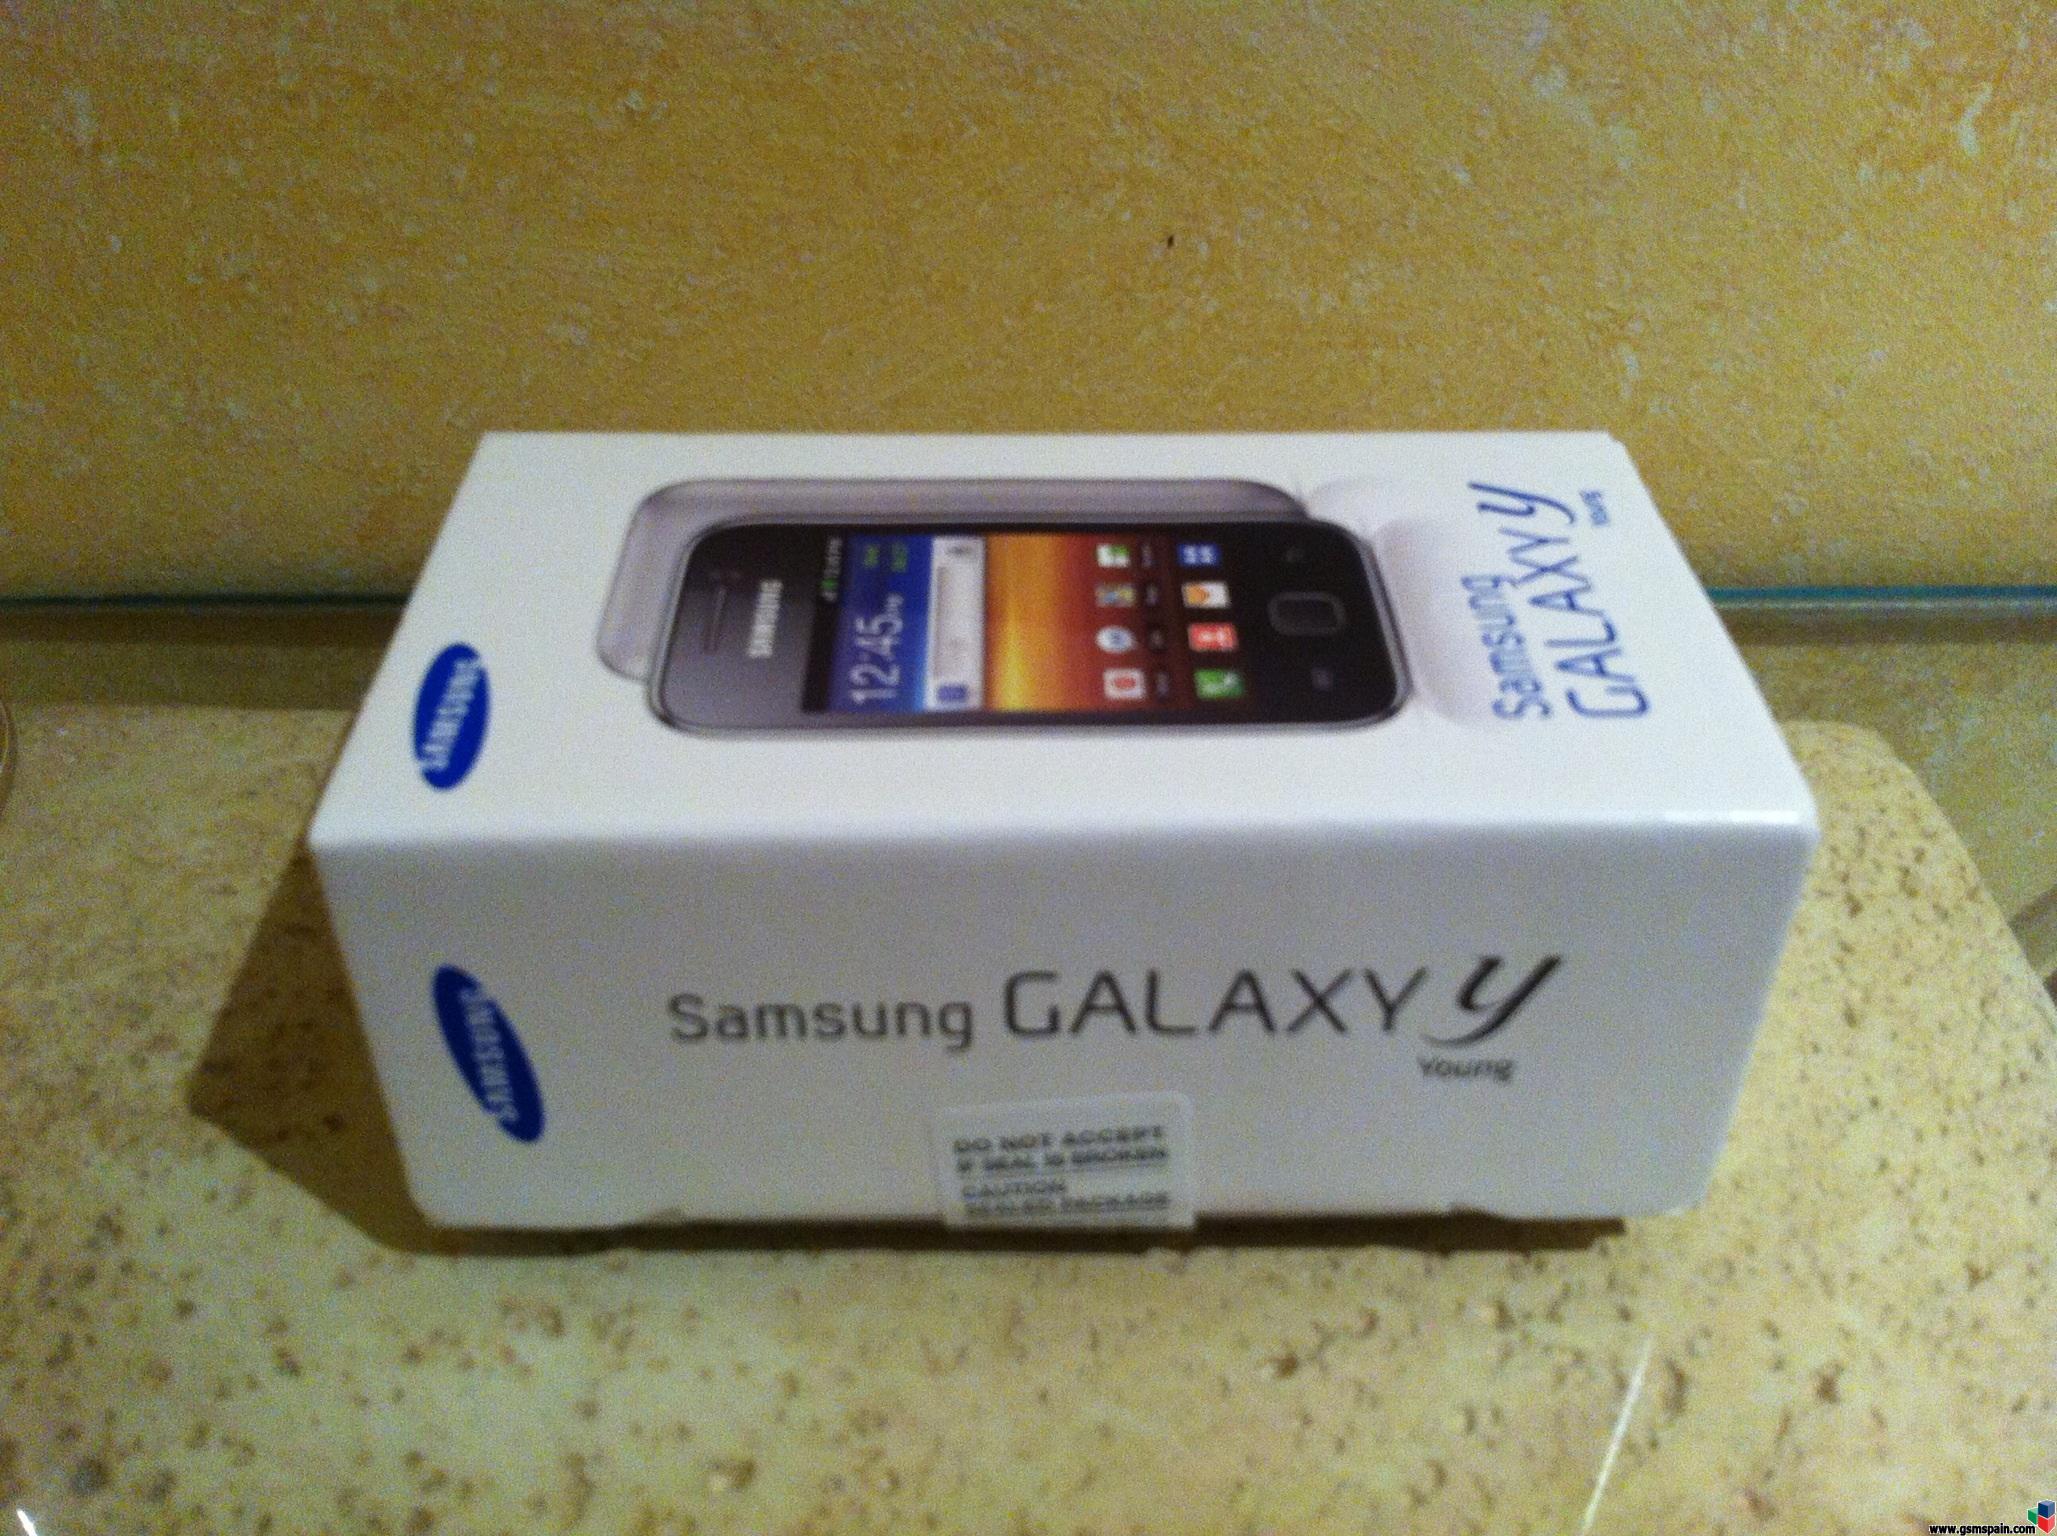 [VENDO] Samsung galaxy y nuevo precintado 80 euros